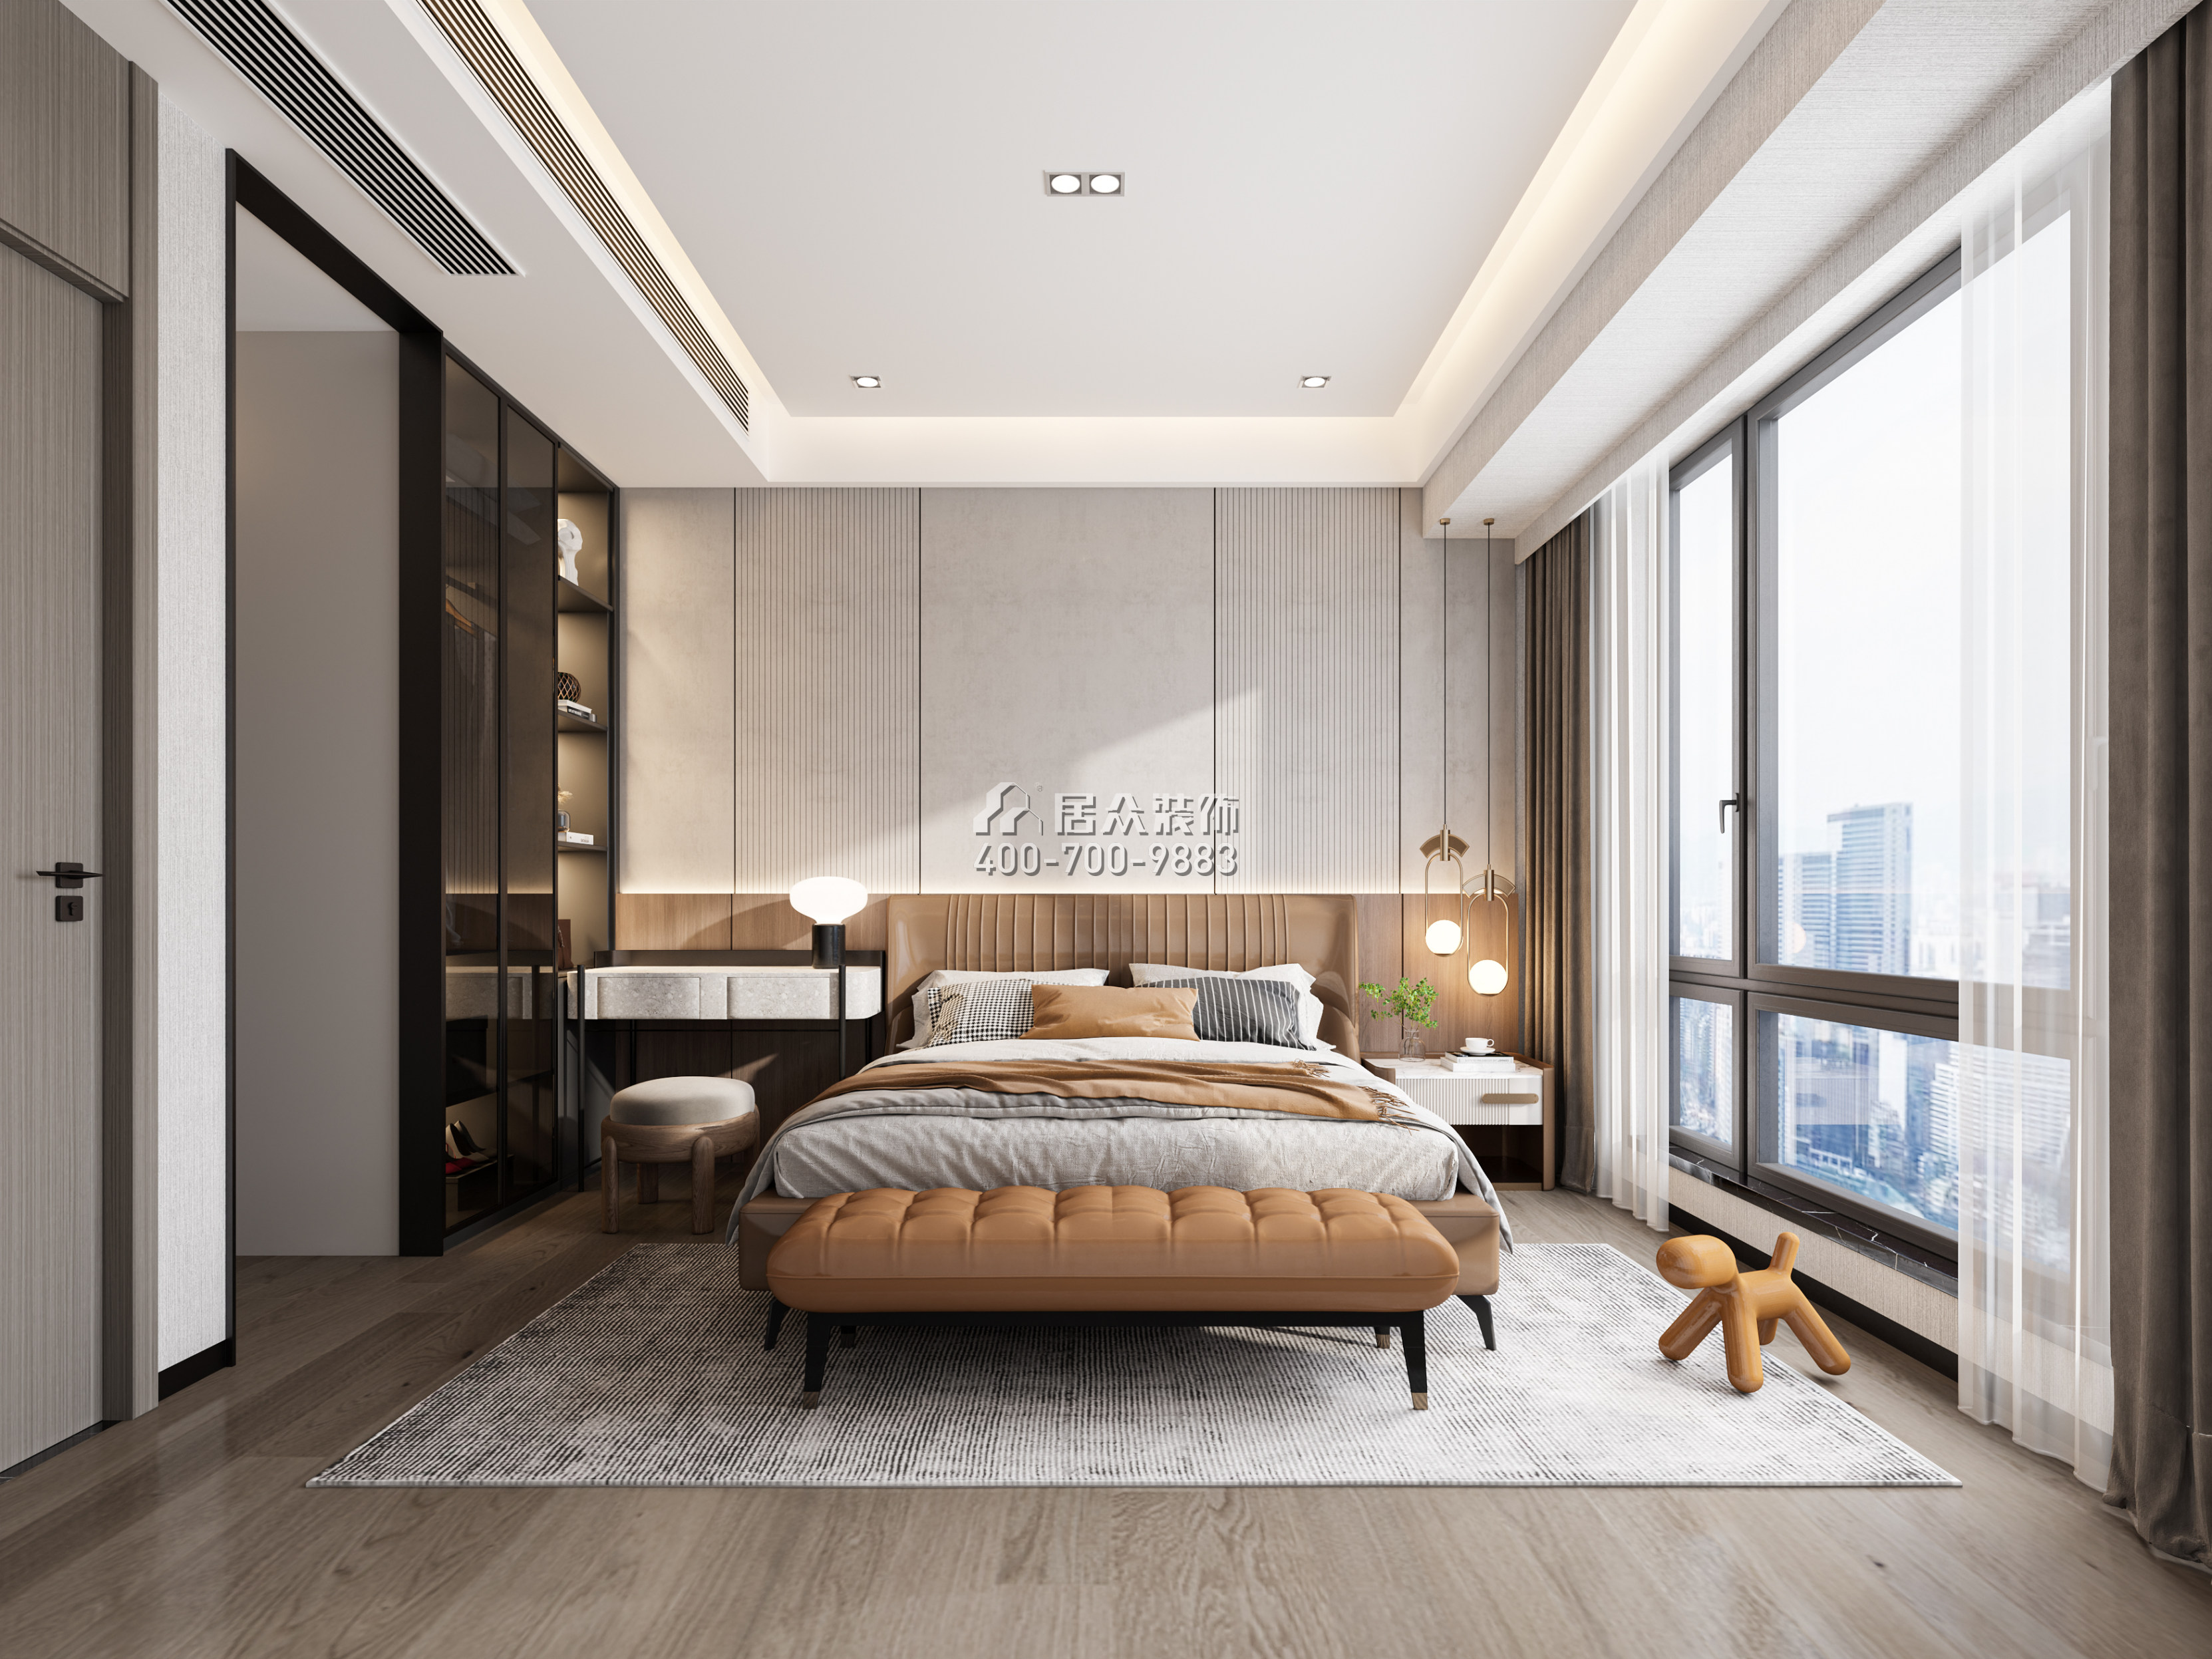 云璽錦庭130平方米現代簡約風格平層戶型臥室裝修效果圖